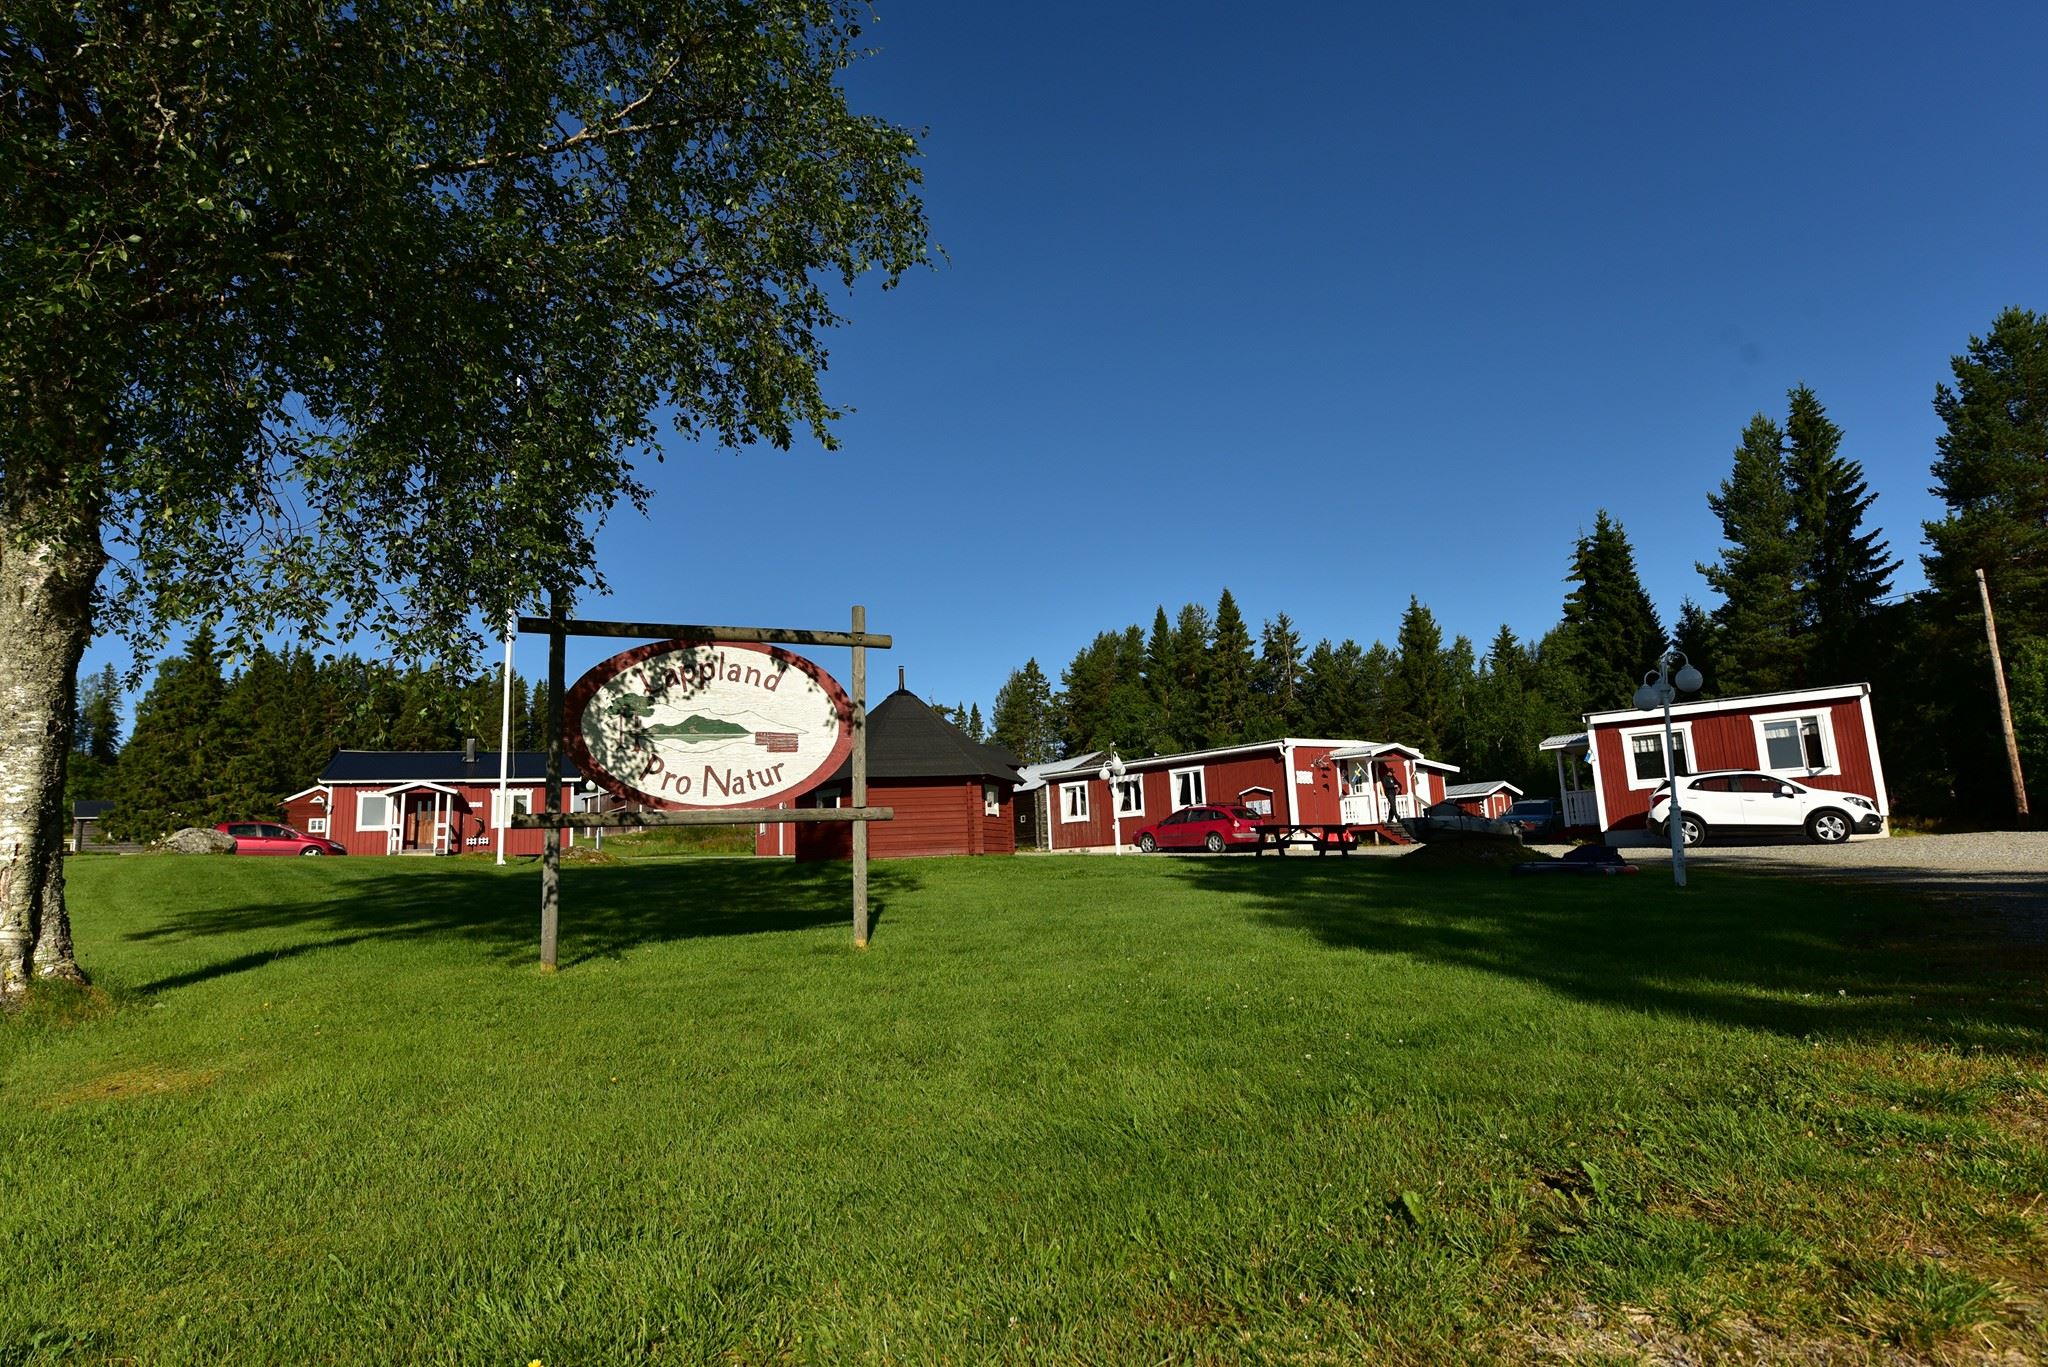 Le camp constitué de typiques chalets suédois est niché dans un écrin de verdure à seulement une centaine de mètres de la rivière.